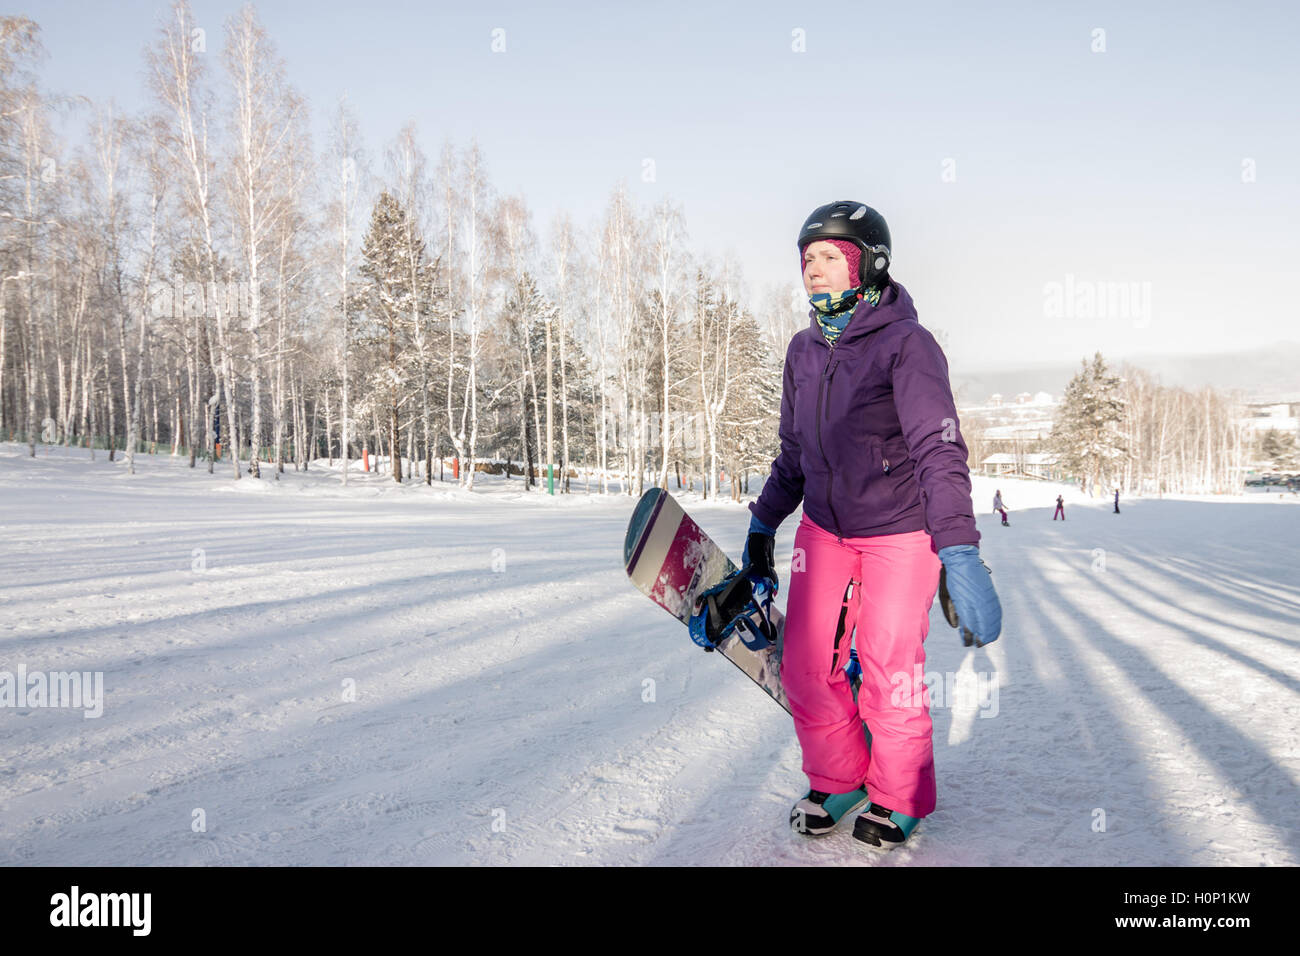 Mujer Joven En La Chaqueta De Esquí, Los Guantes Y Los Pantalones Rosados,  Extensión De Los Brazos, E Foto de archivo - Imagen de libre, nieve:  133722950